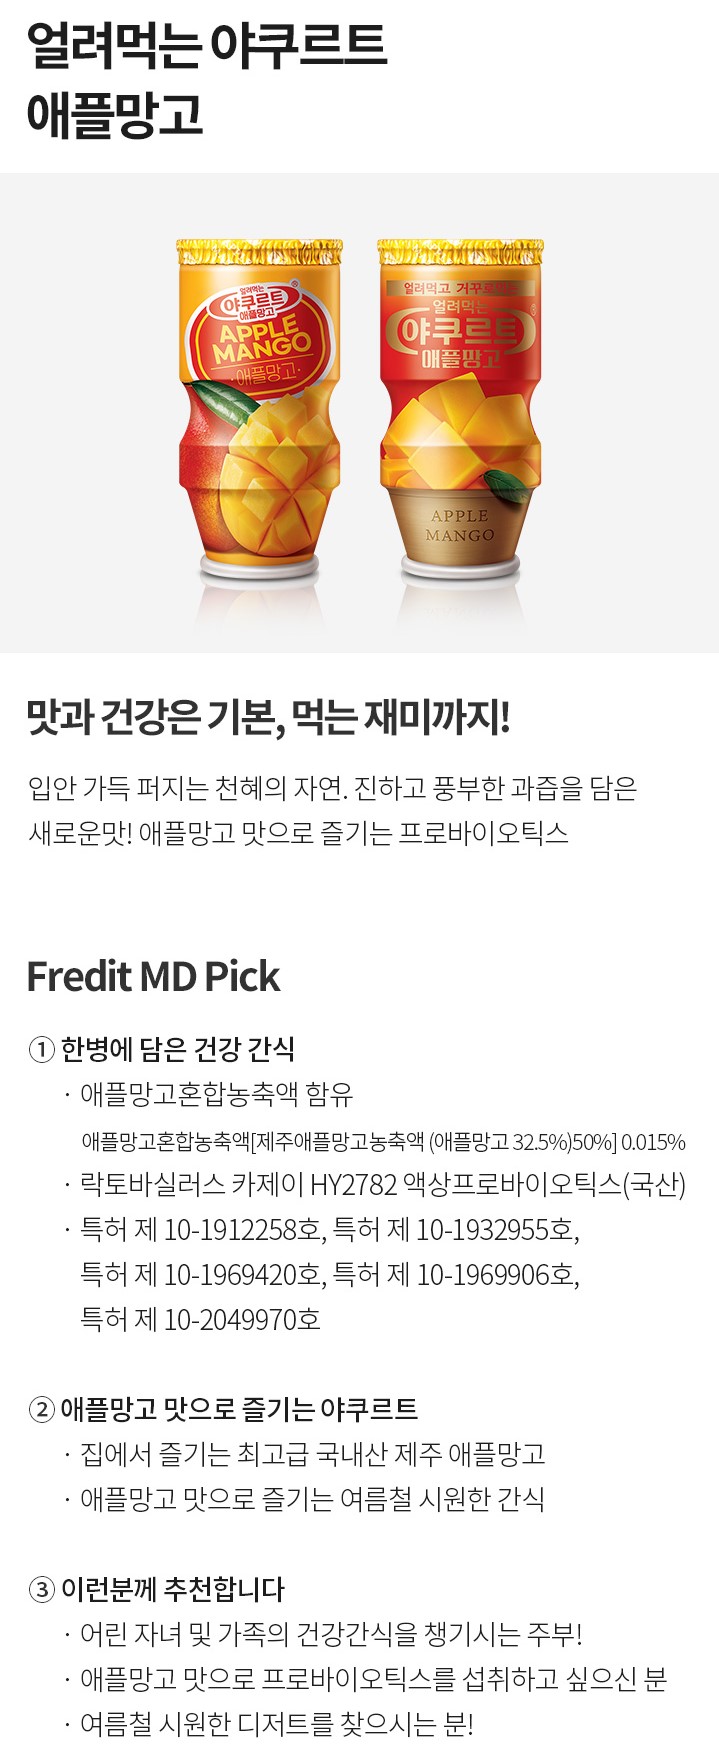 韓國食品-[에치와이] 얼려먹는 야쿠르트[애플망고] (냉장보관) 110mL